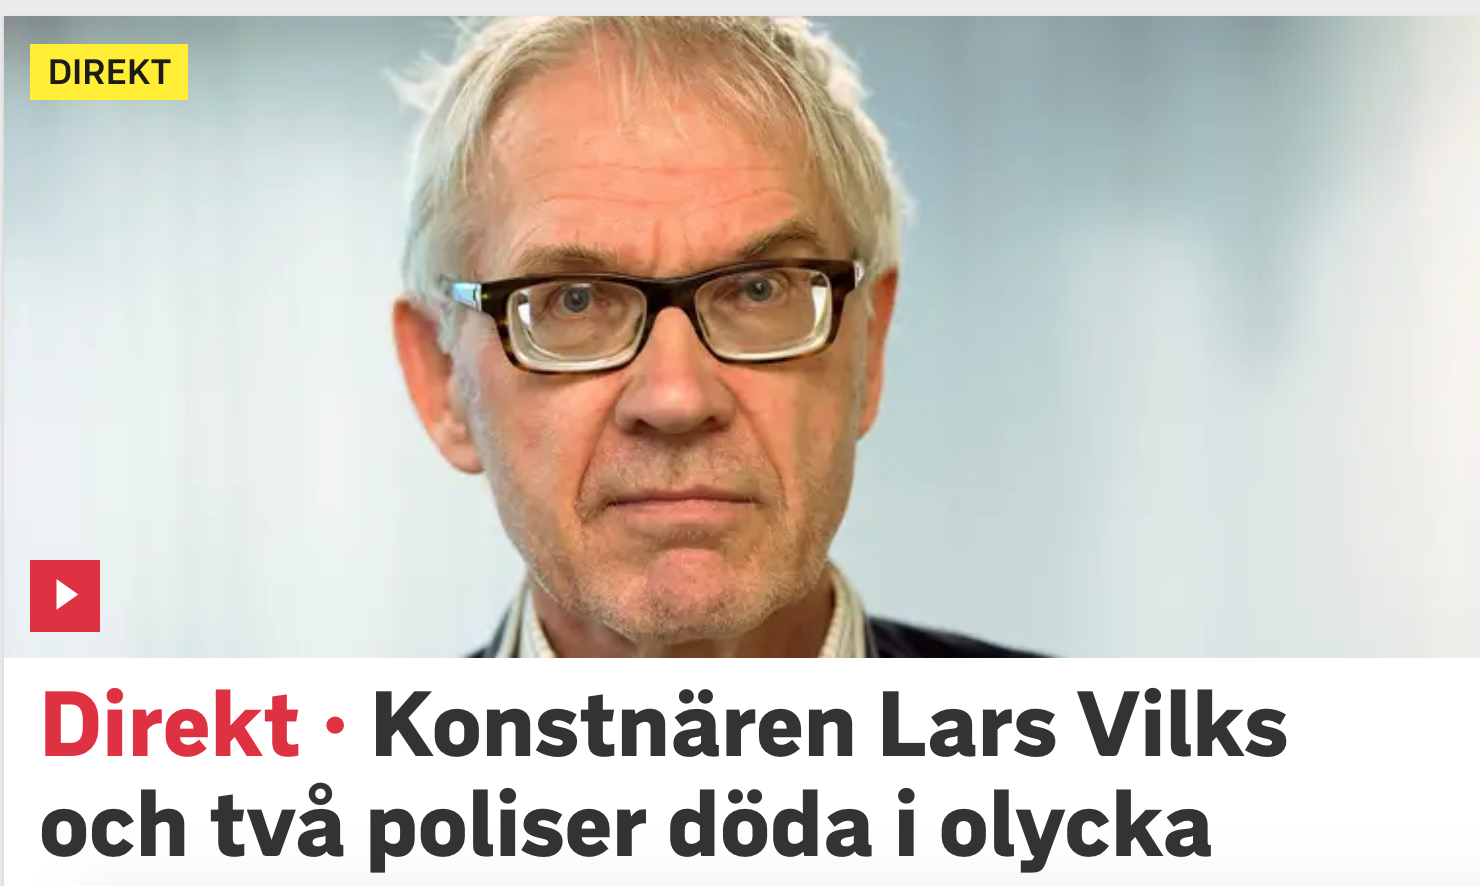 Шведский художник Ларс Вилкс и двое охранявших его полицейских скончались в результате ДТП